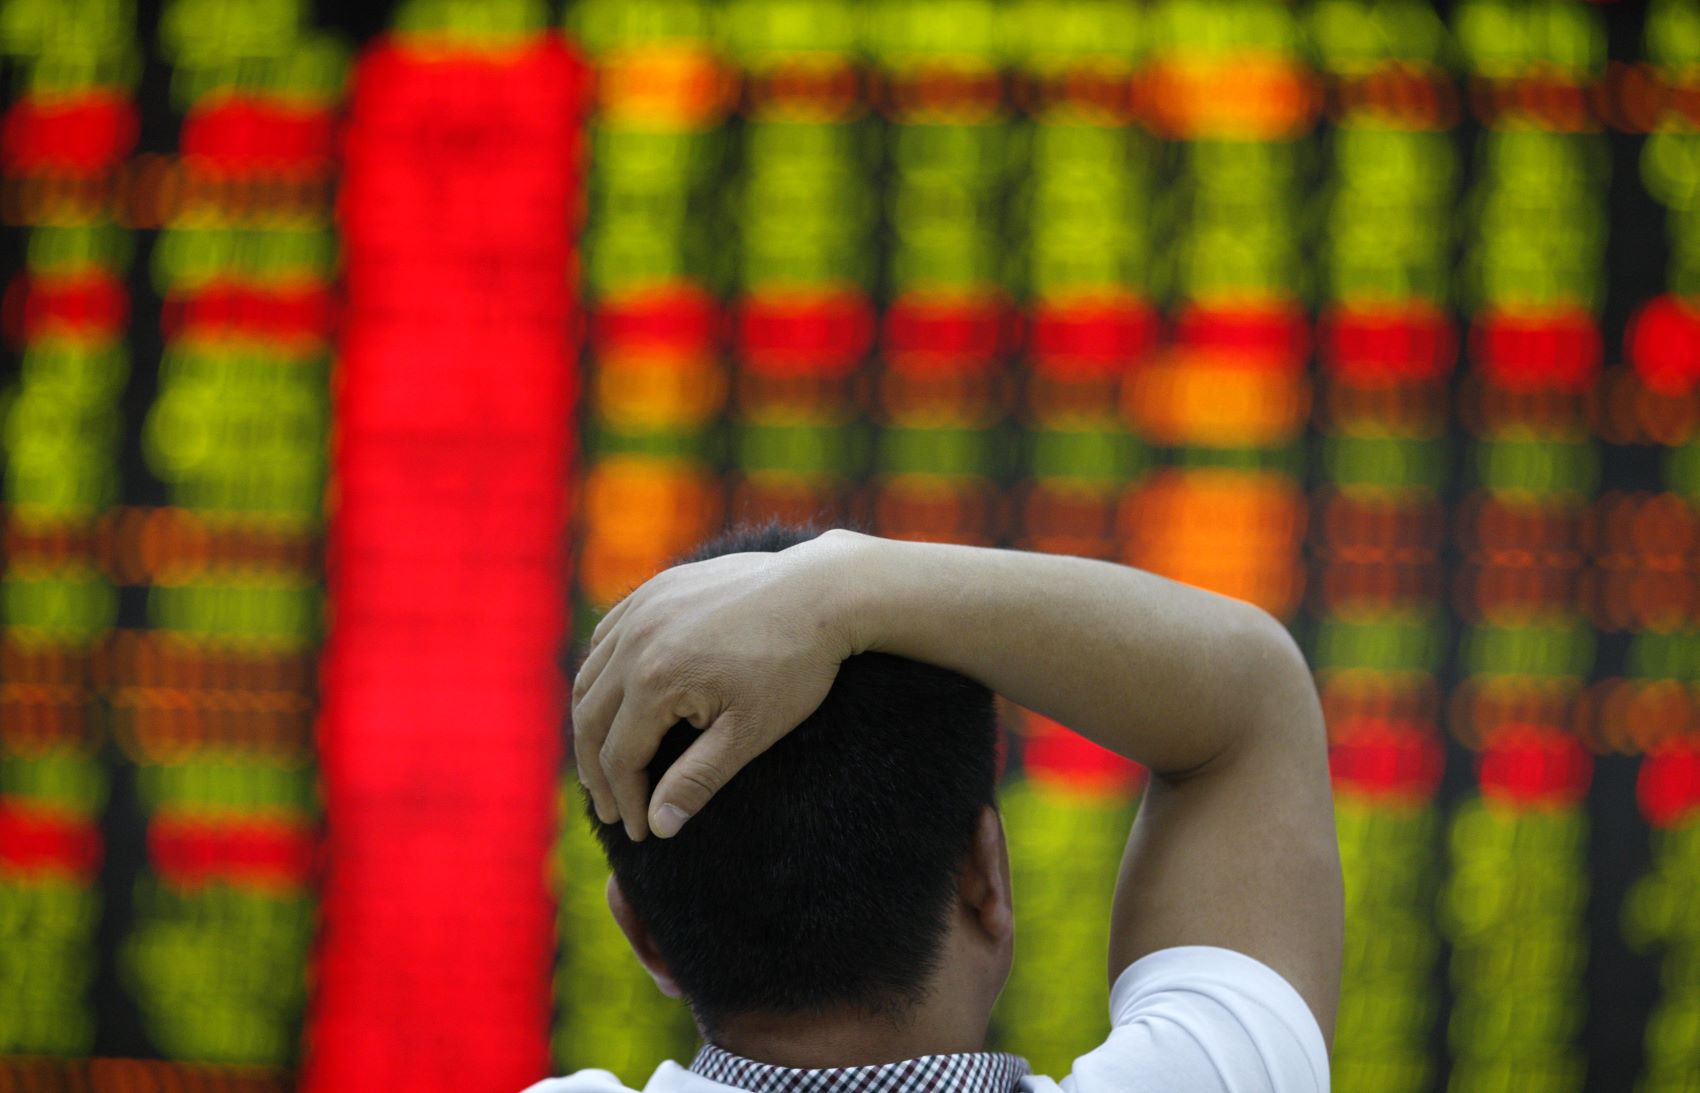 Shanghai Composite Index stocks mercado ações índices bolsa baixa queda